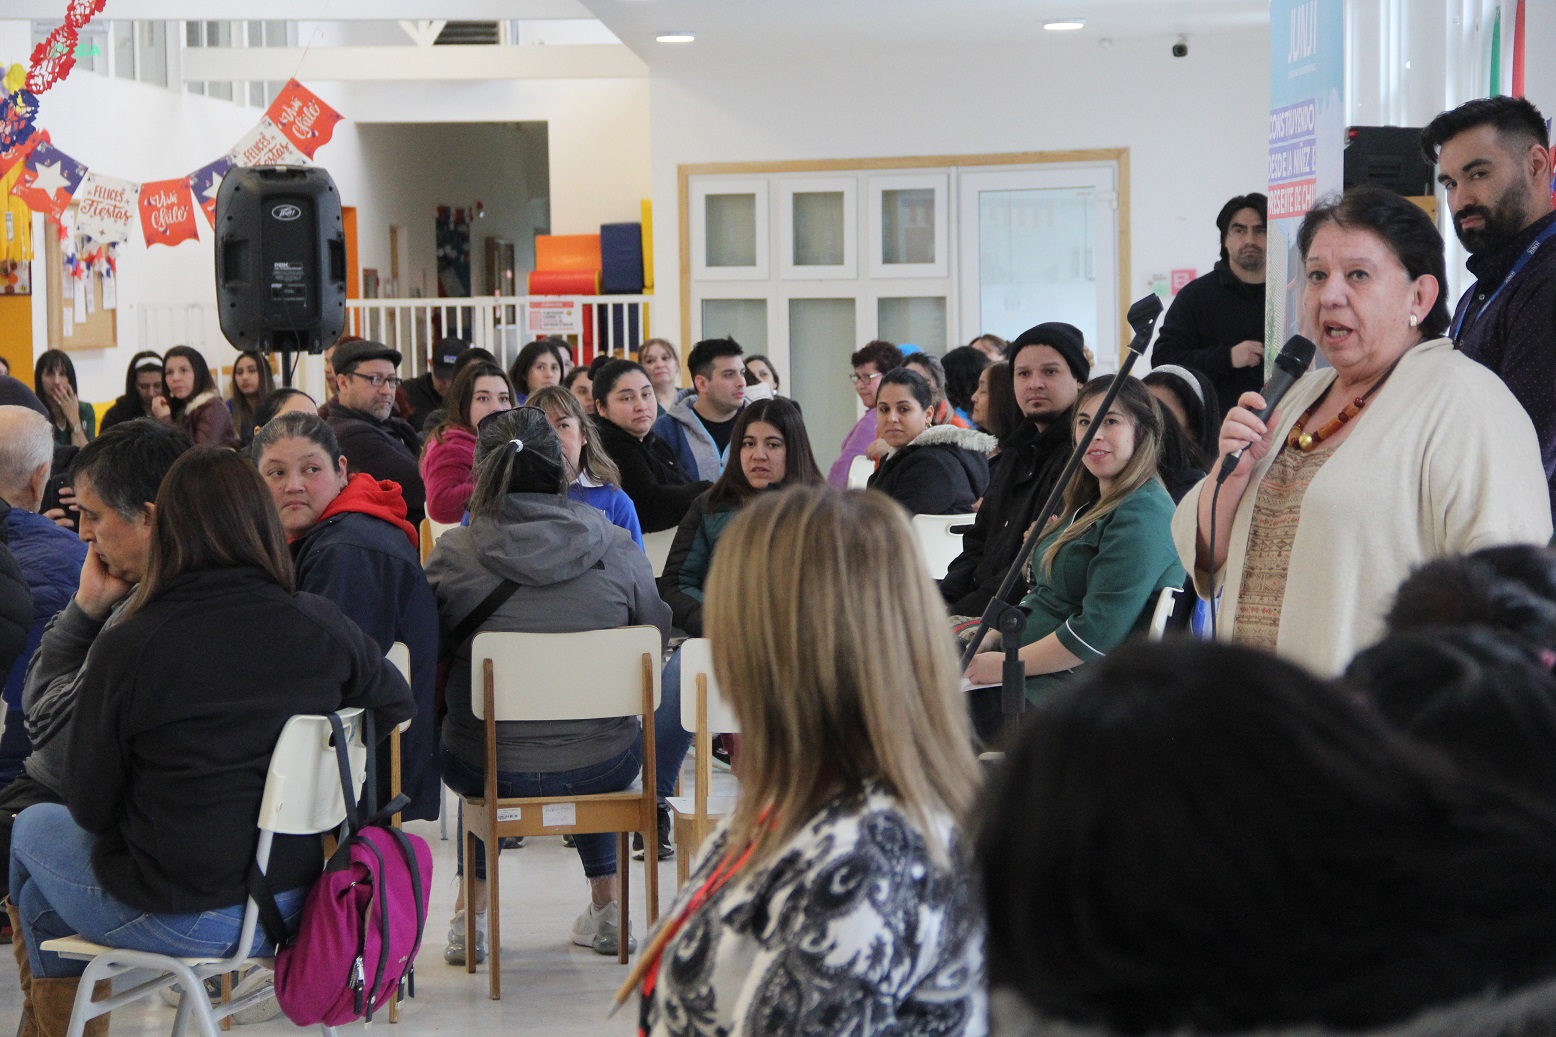 Participación récord de madres, padres y apoderados marcó diálogo ciudadano del Jardín Infantil “Villa Austral” de la JUNJI en Punta Arenas